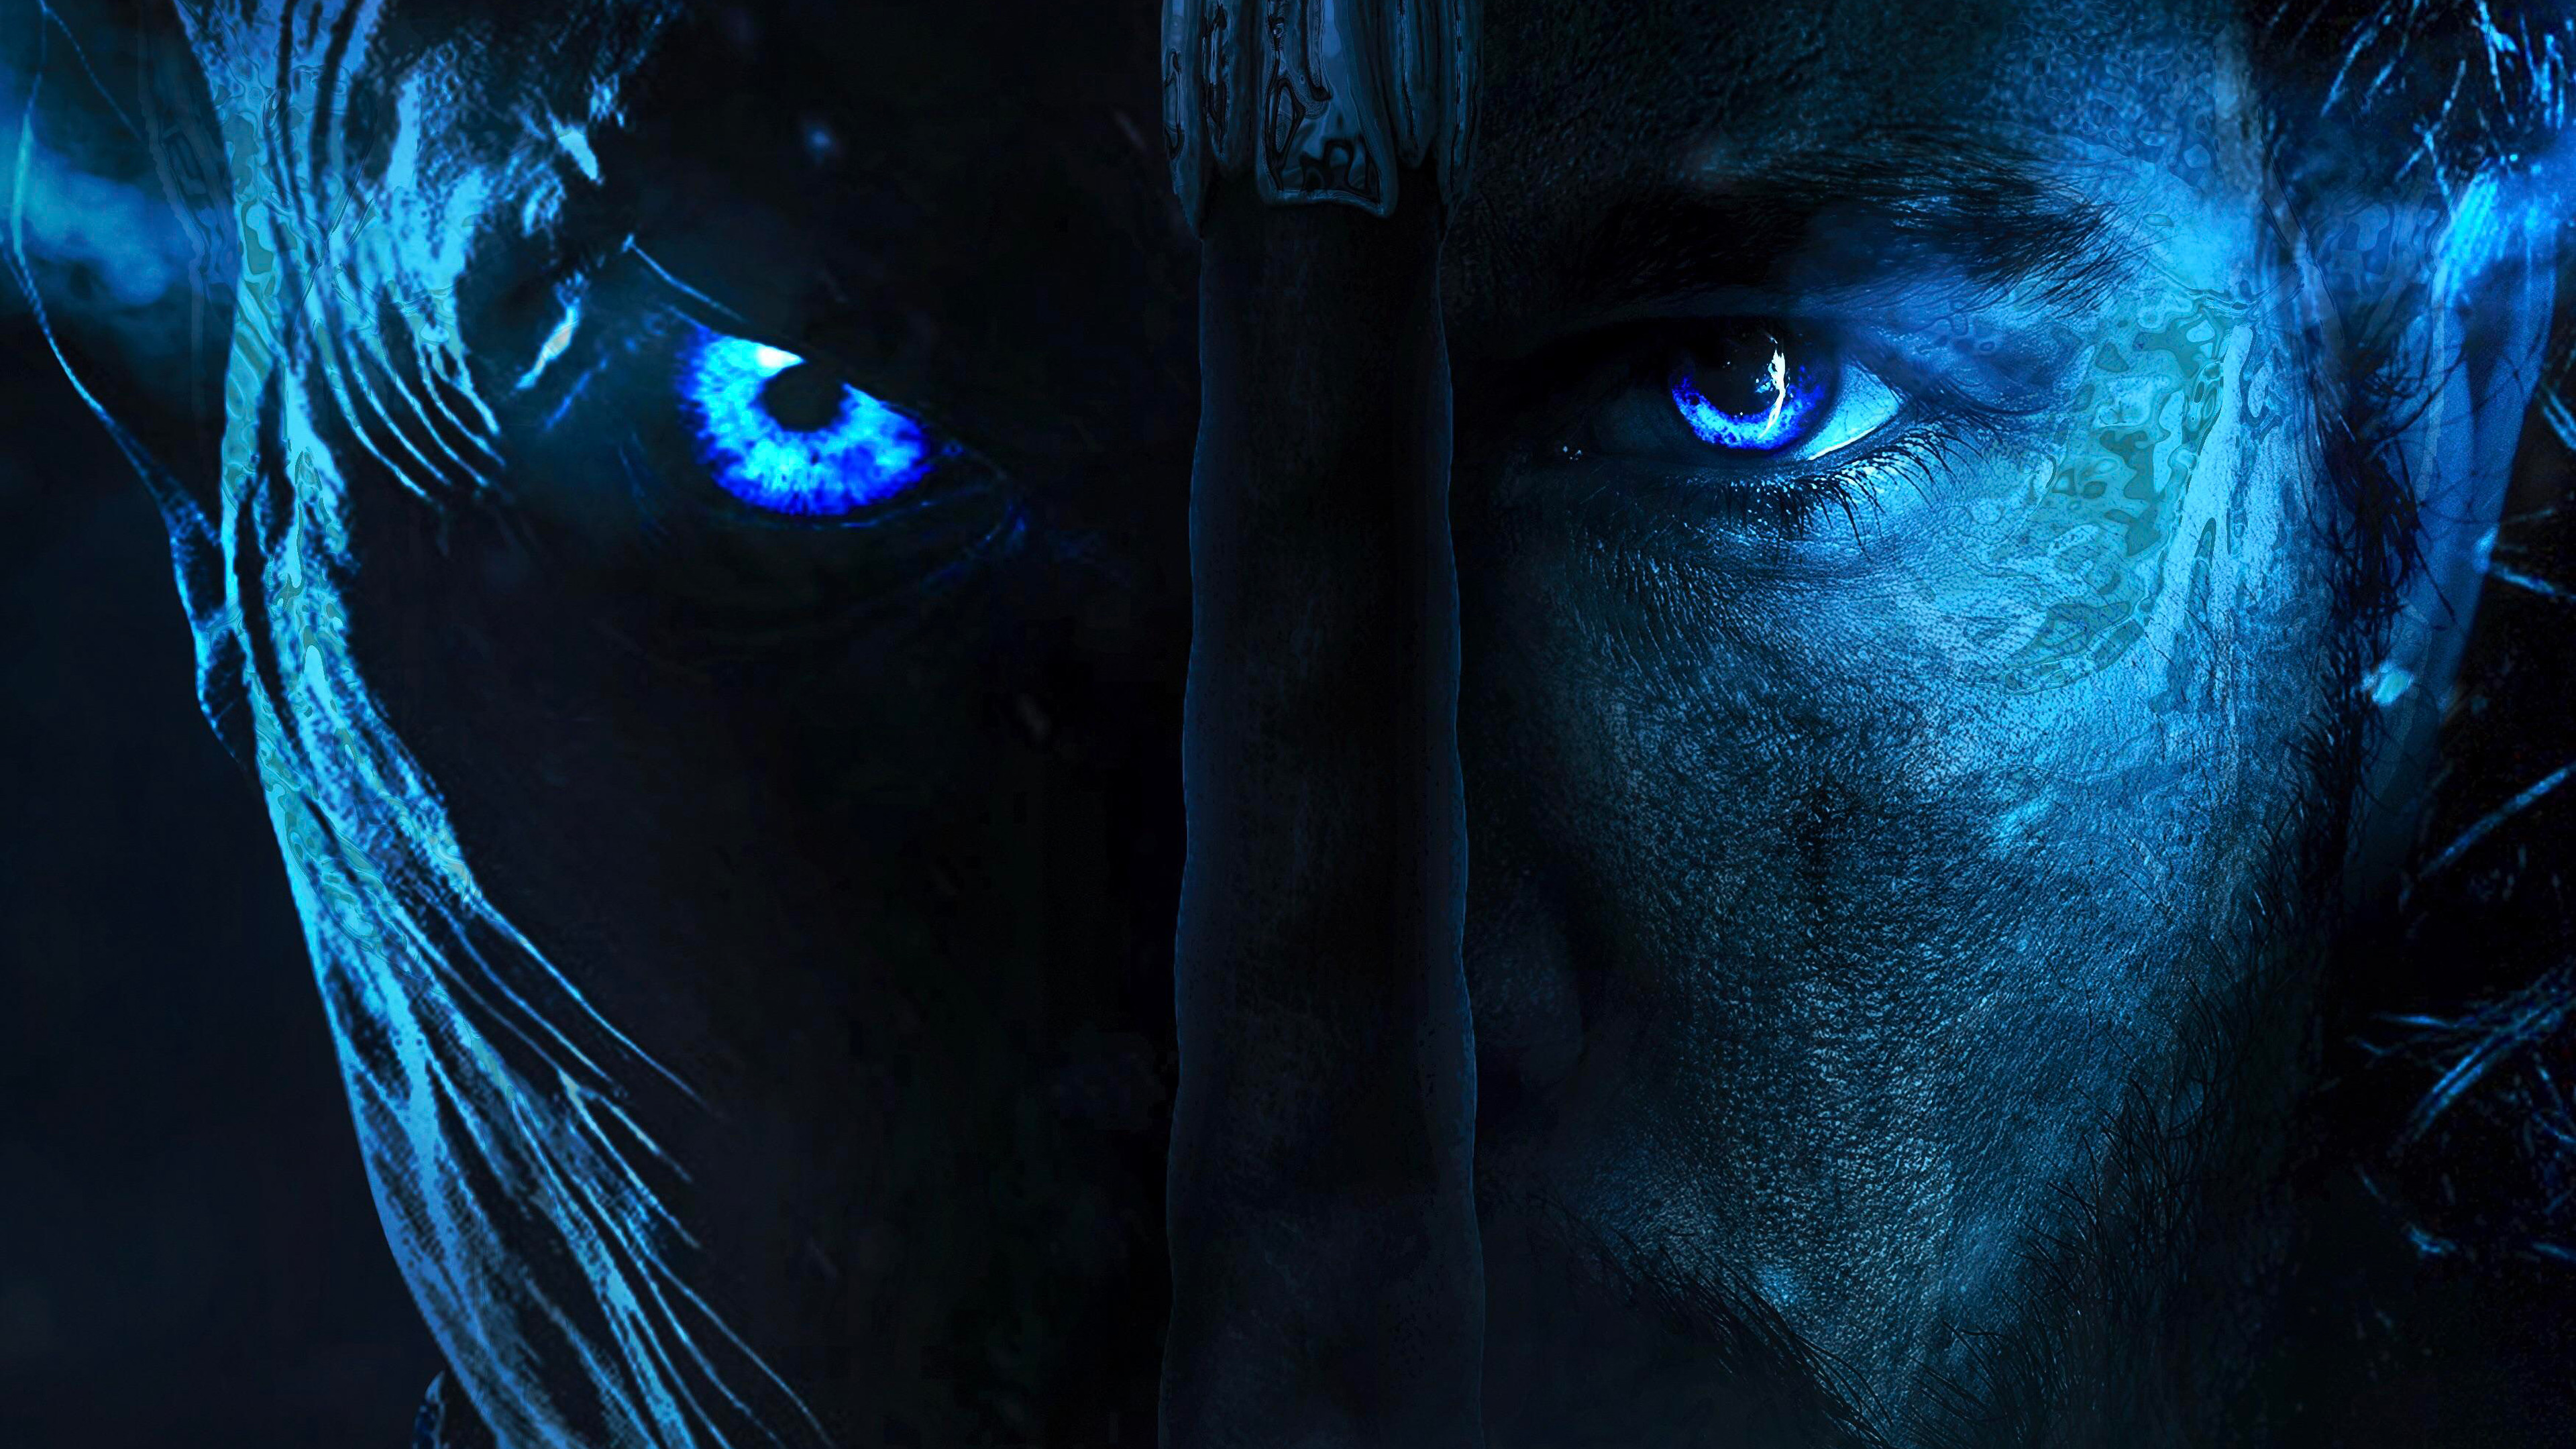 Không thể bỏ qua Night King và Jon Snow - hai nhân vật sẽ làm cho Game of Thrones Season 8 trở thành siêu phẩm. Nếu bạn muốn truyền tải sức mạnh của hai nhân vật này, hãy tải ngay bức hình nền này với độ phân giải 4K và thưởng thức nó trên màn hình máy tính của bạn. Lấy cảm hứng từ phim với bộ sưu tập hình nền Game of Thrones miễn phí này!